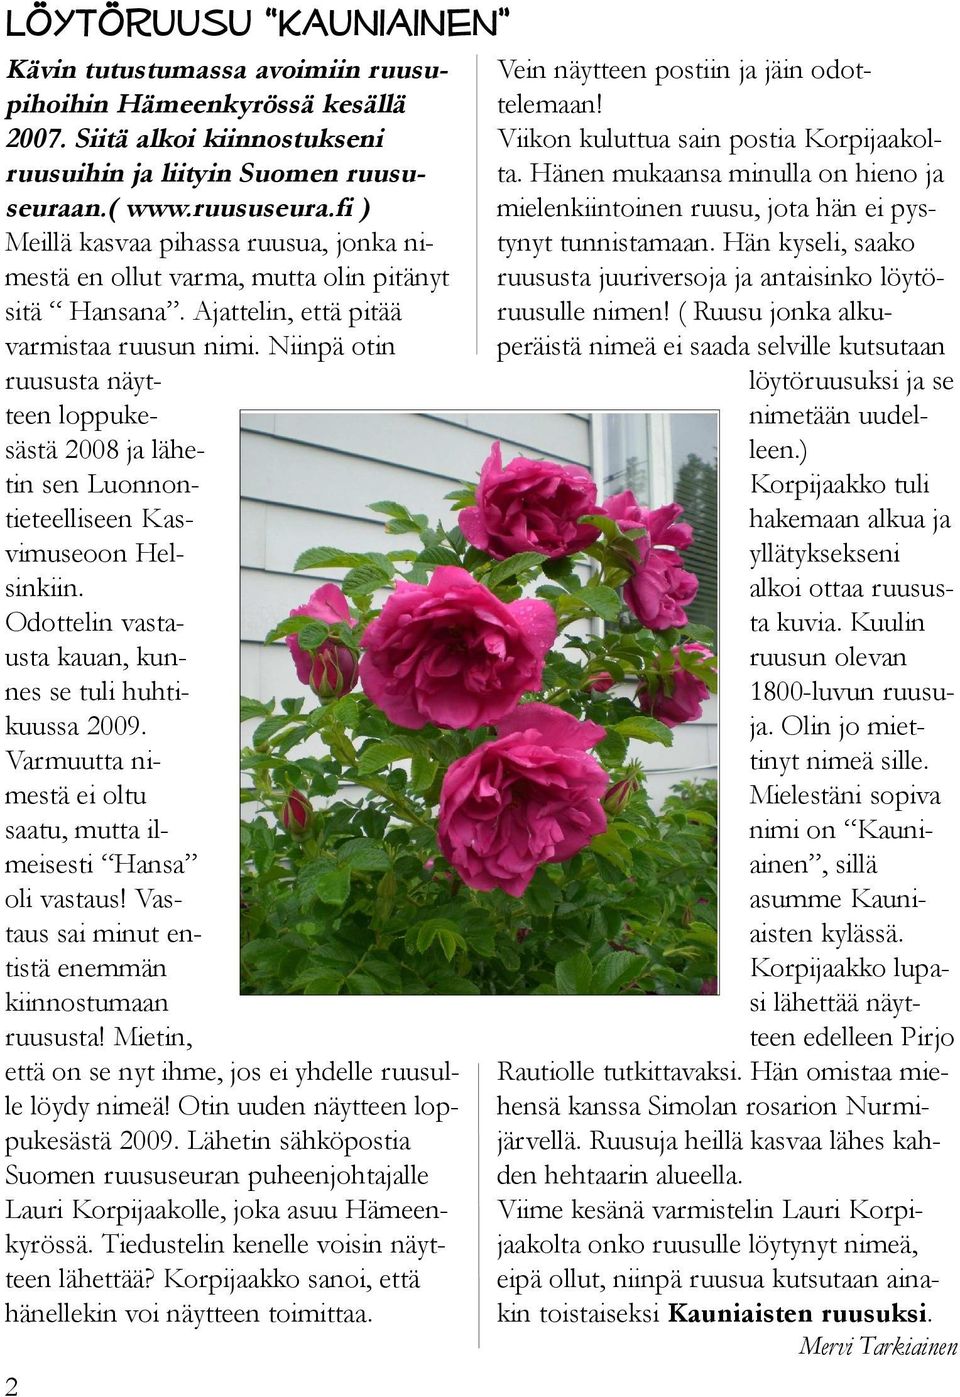 Niinpä otin ruususta näytteen loppukesästä 2008 ja lähetin sen Luonnontieteelliseen Kasvimuseoon Helsinkiin. Odottelin vastausta kauan, kunnes se tuli huhtikuussa 2009.